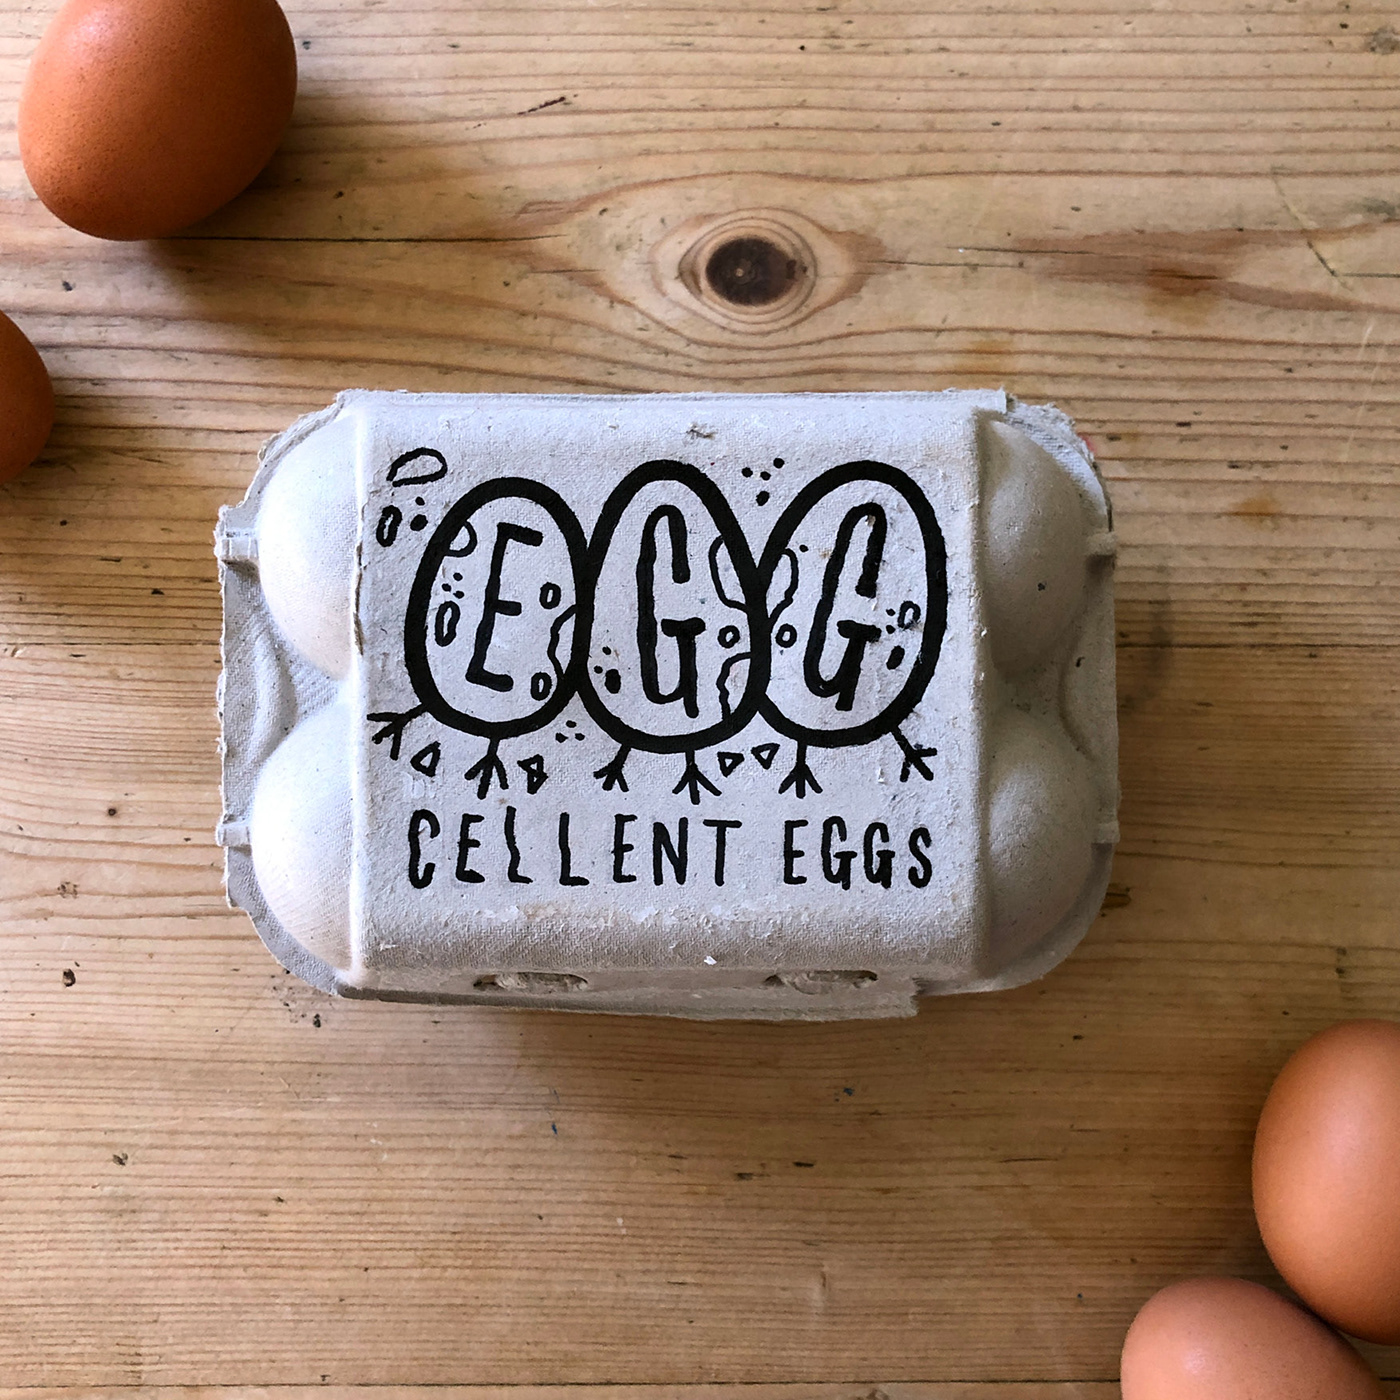 branding  doodle egg Eggbox eggs illo local Packaging yorkshire lockdown